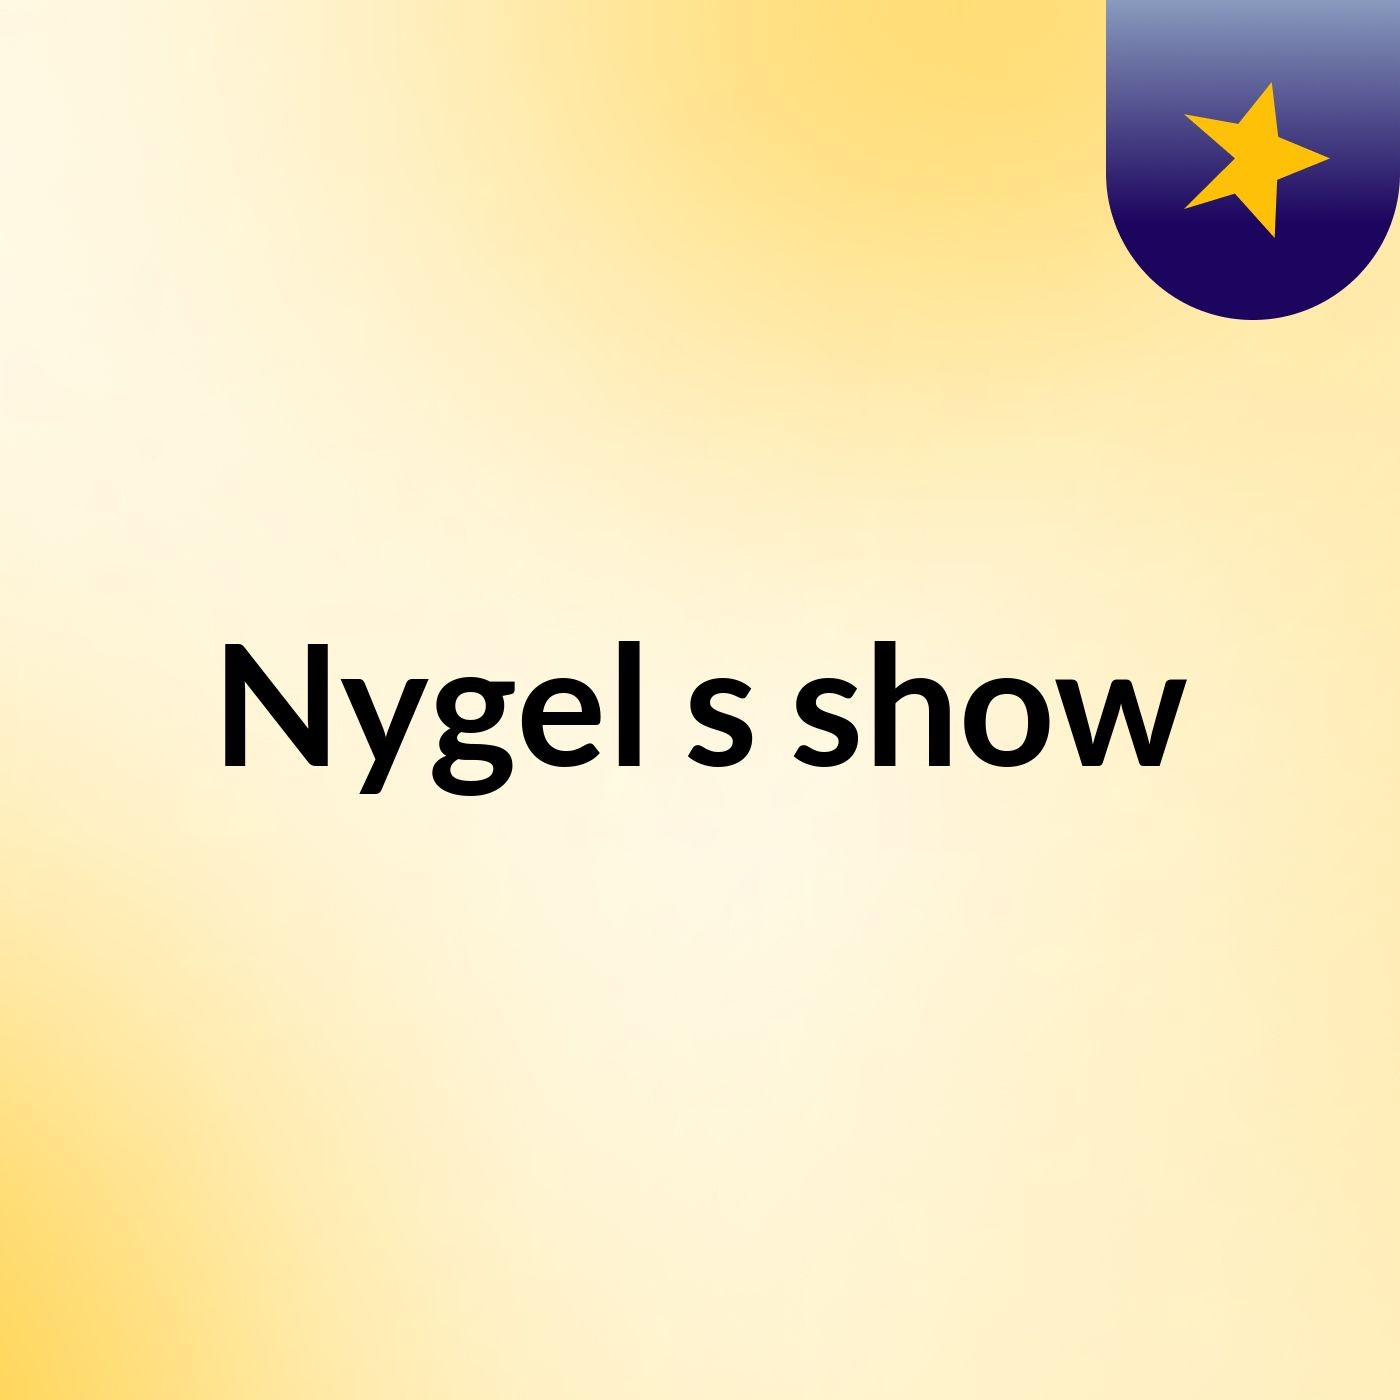 Nygel's show